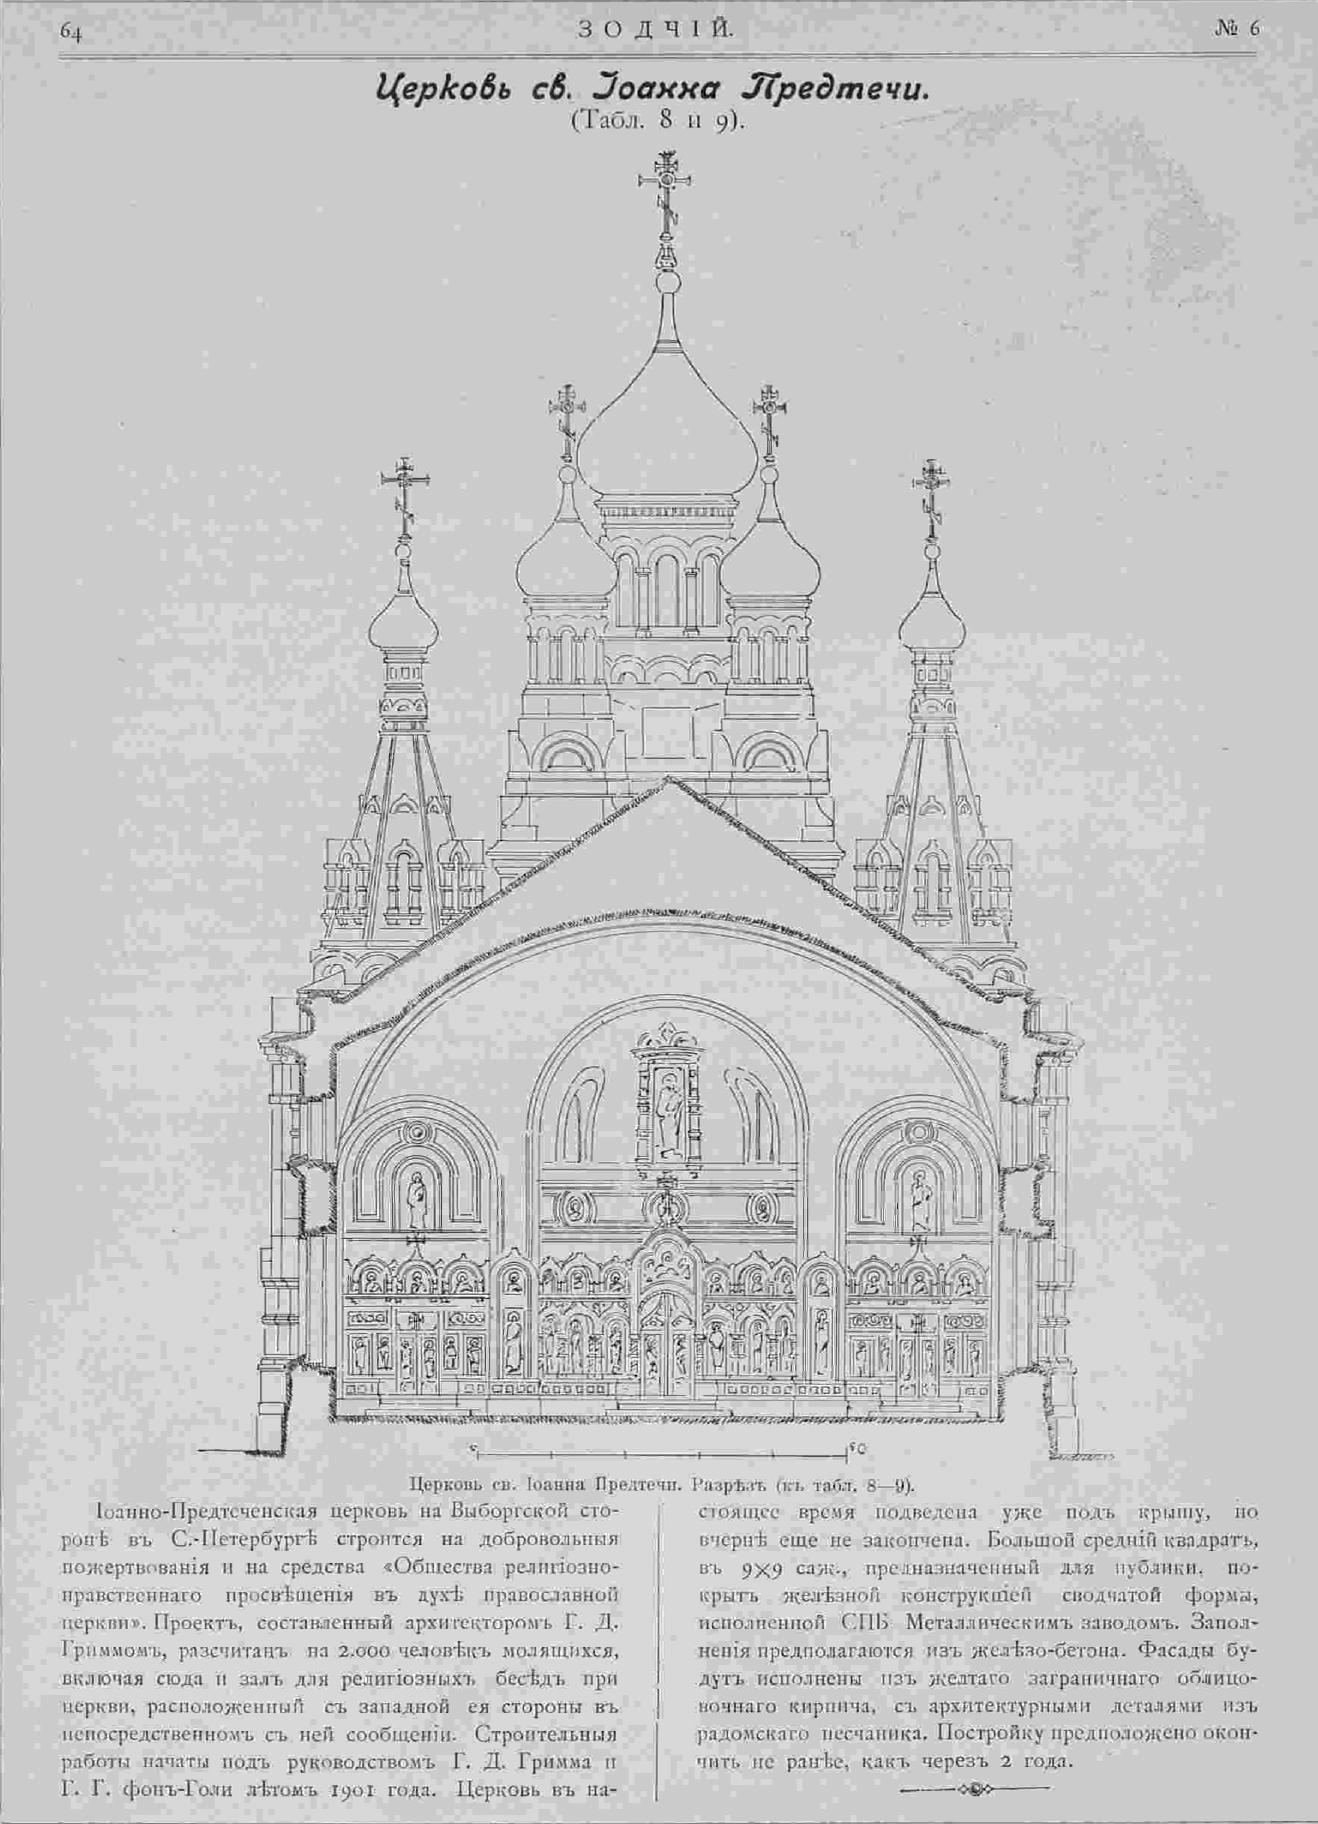 Церковь Иоанна Предтечи на Выборгской стороне. Г. Д. Гримм. Зодчий, 1903, 6, стр. 64